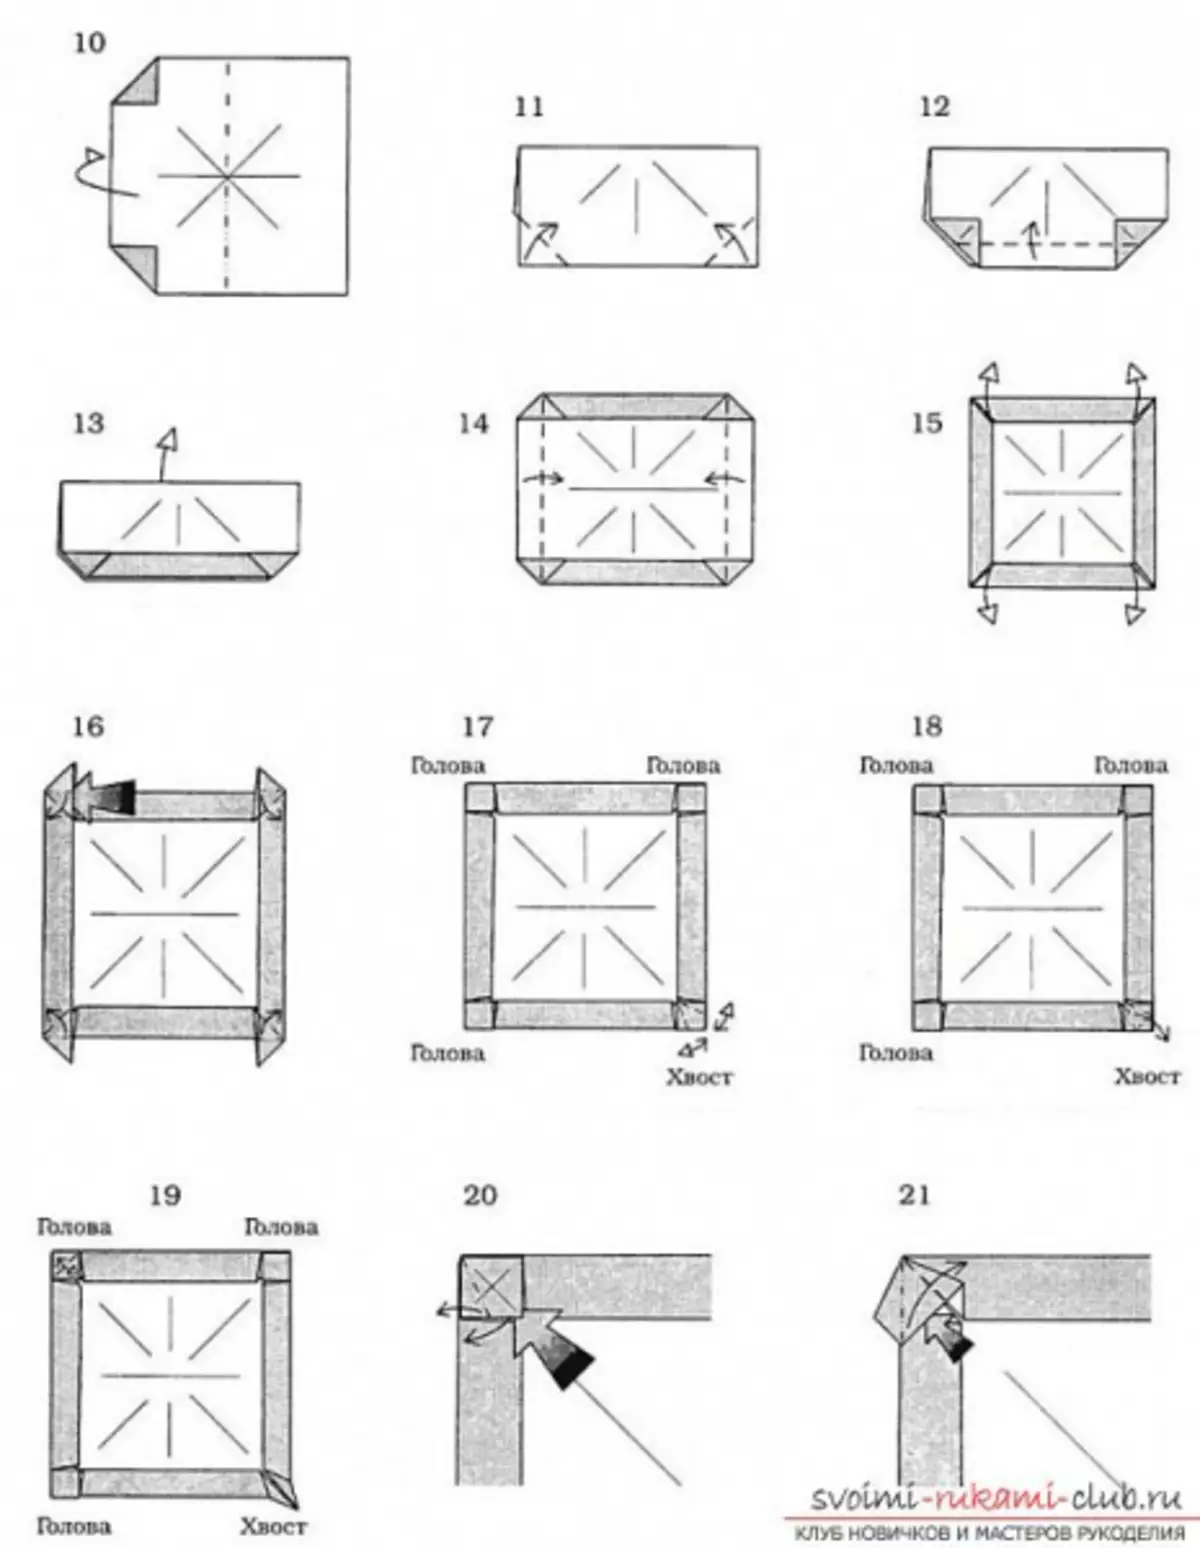 Origami Dragon iz papirja: Kako narediti začetnike s shemo in videom